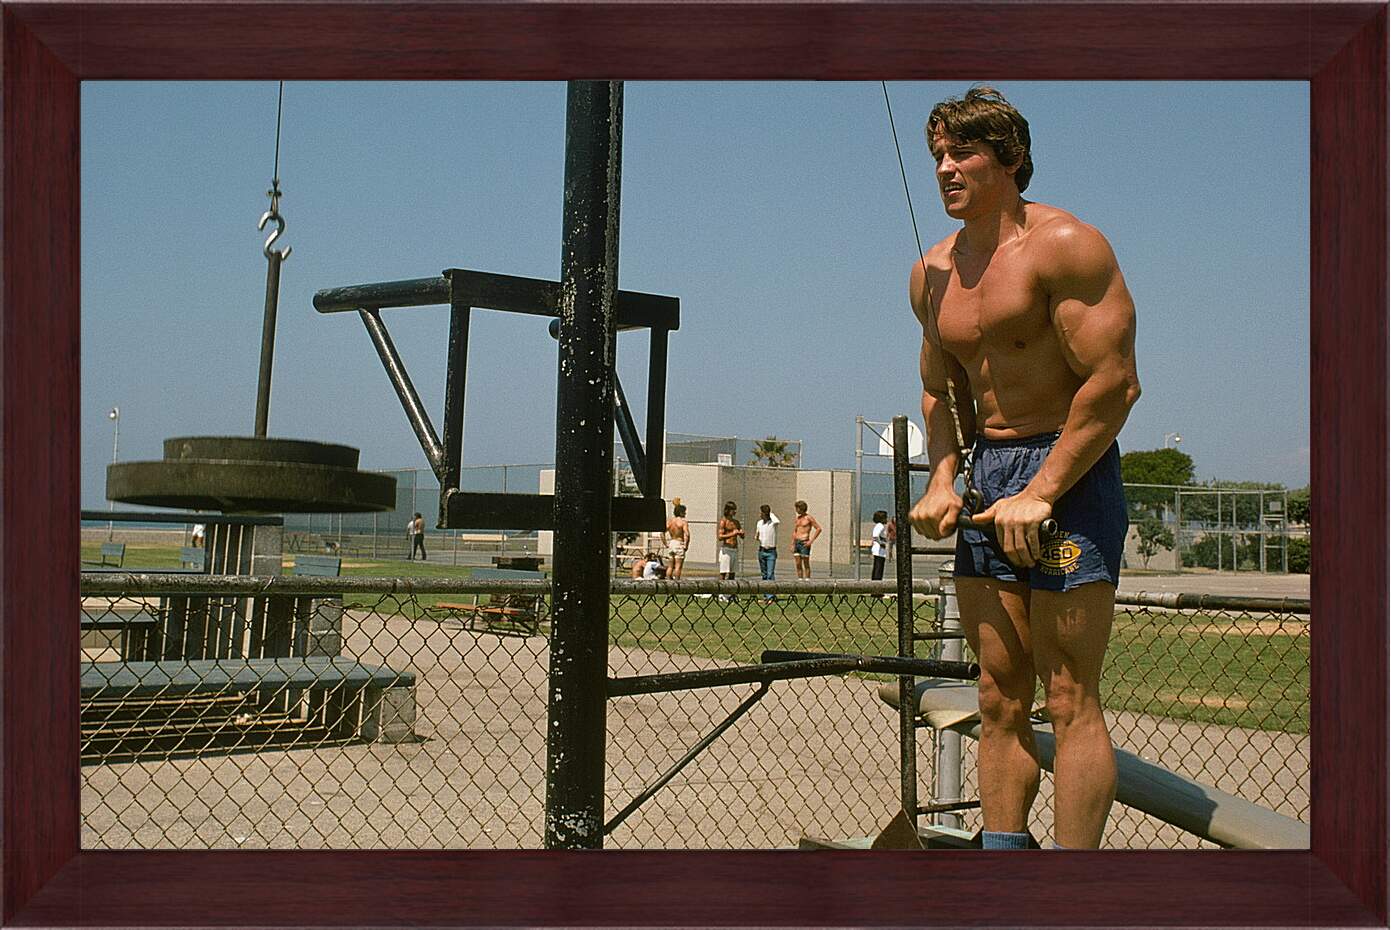 Картина в раме - Шварценеггер Арнольд (Arnold Schwarzenegger)